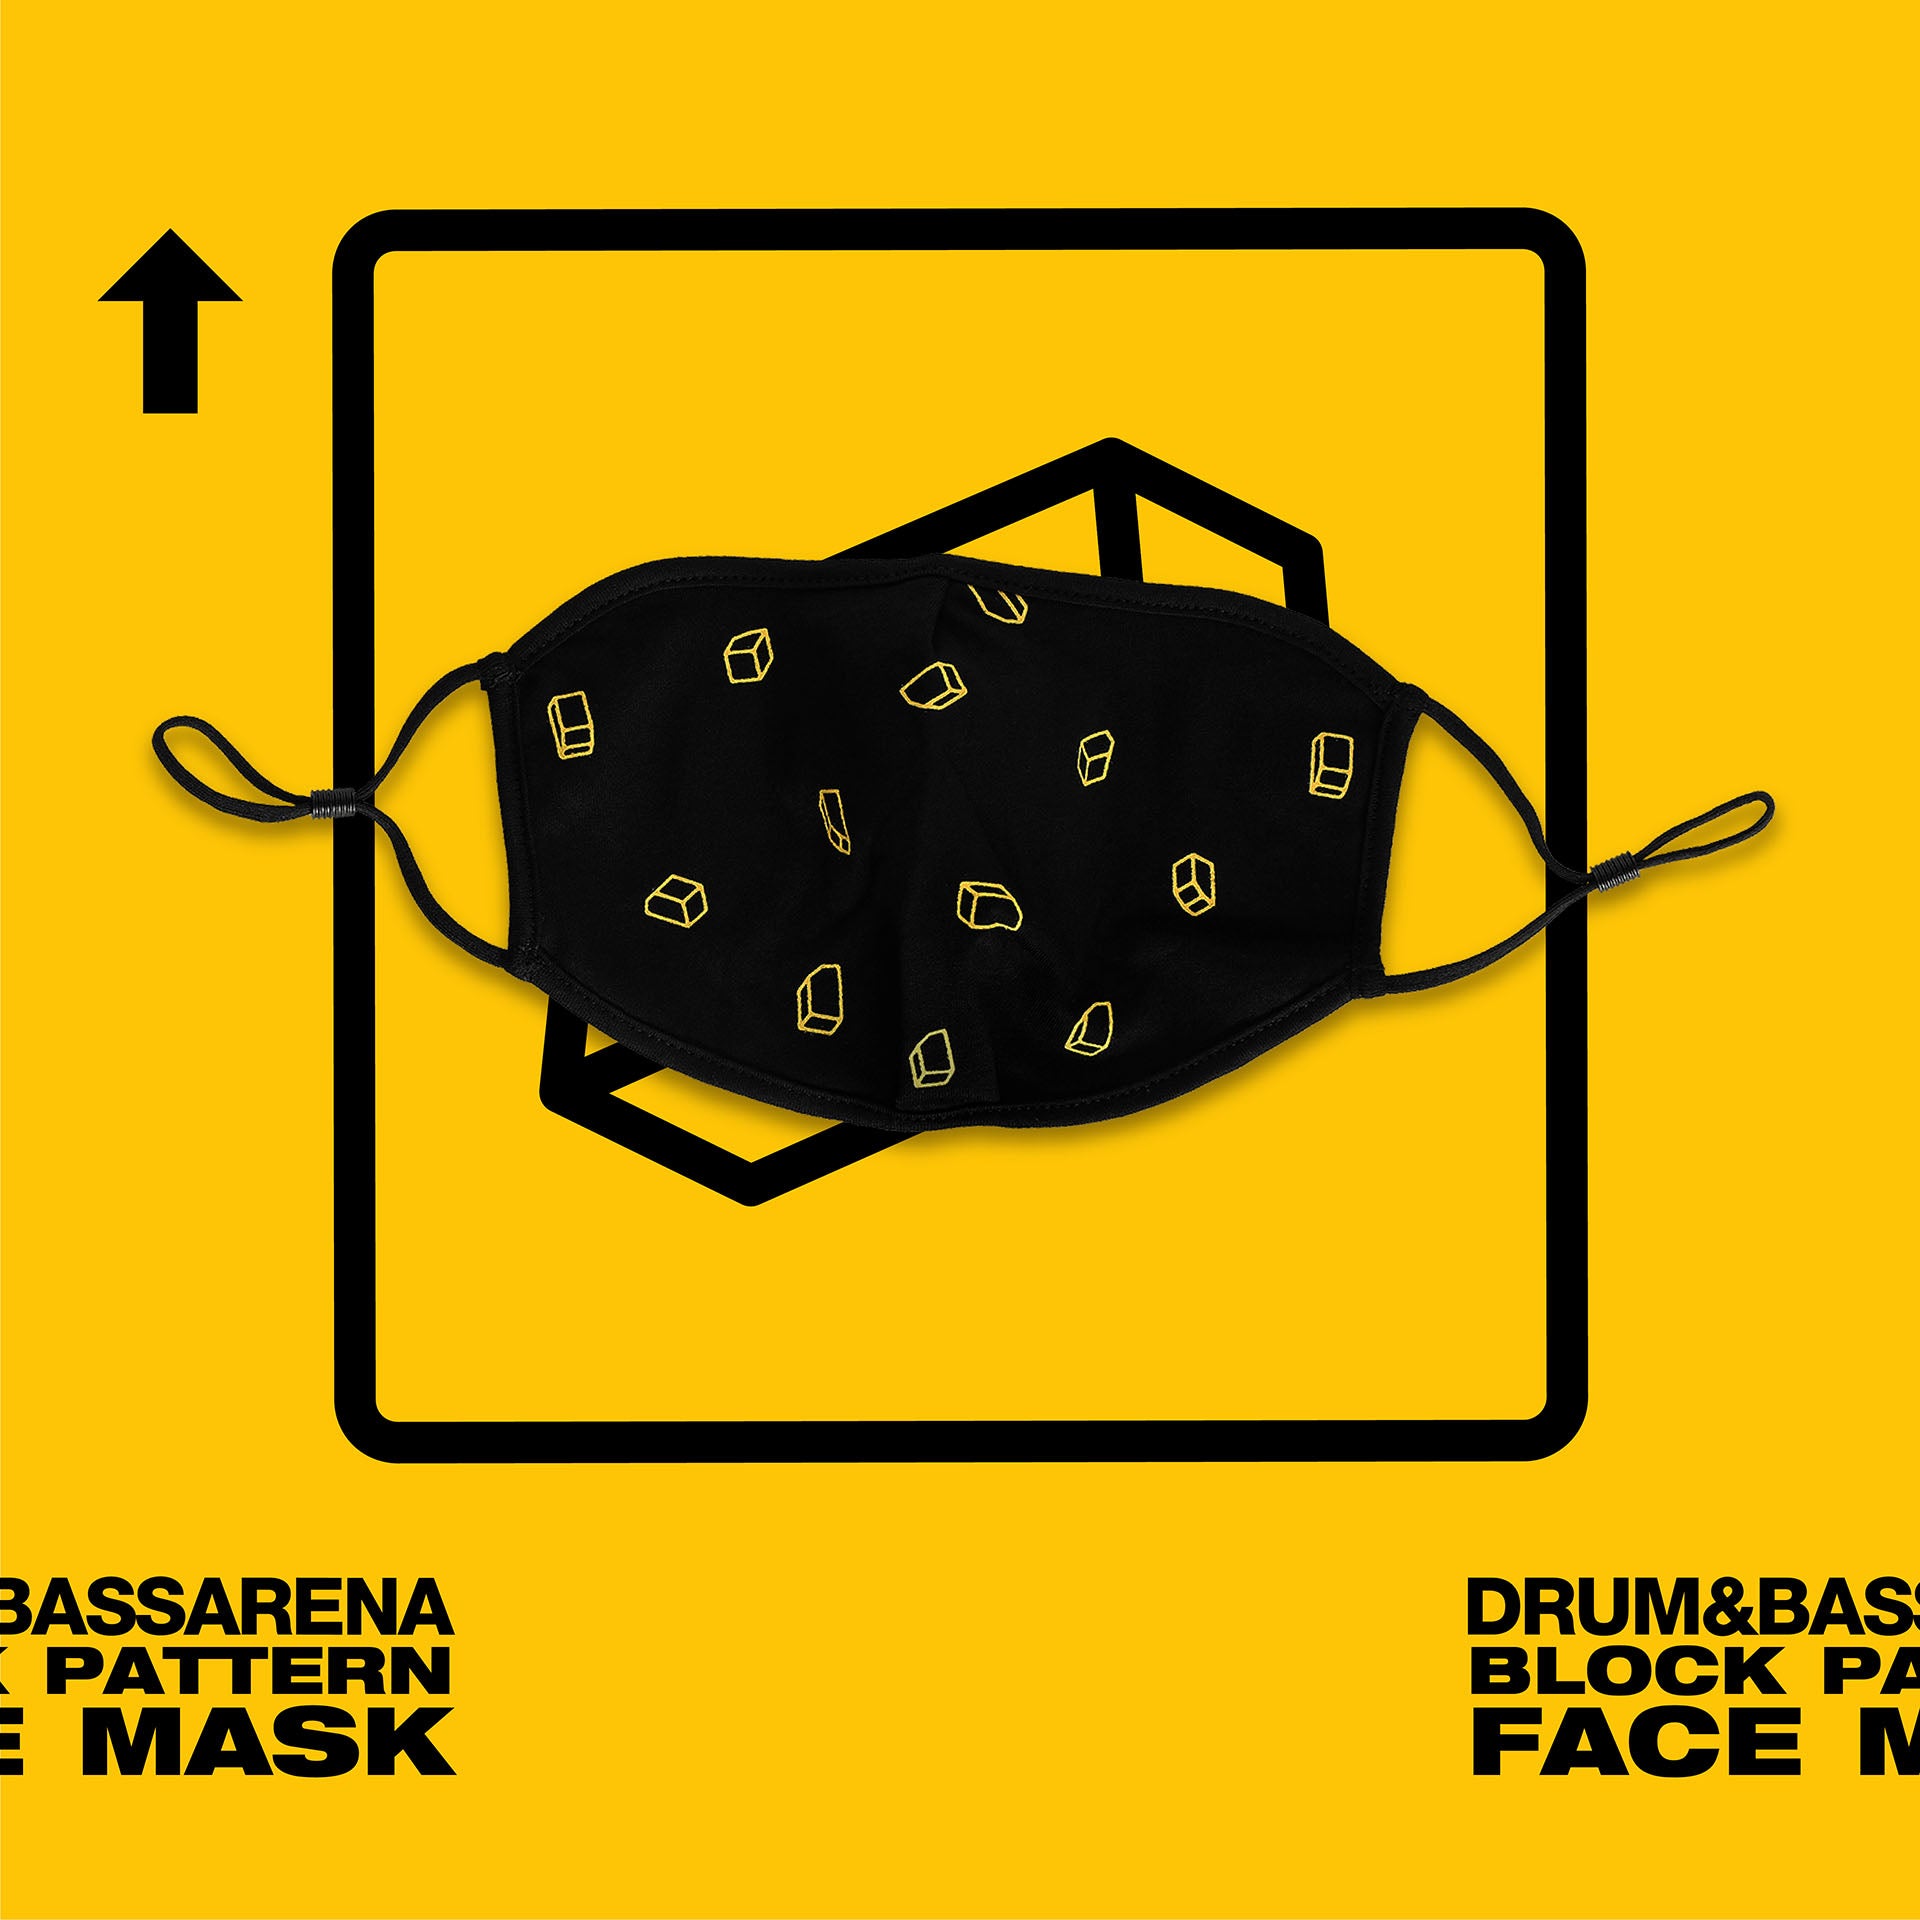 Maska obličeje s blokovým vzorem